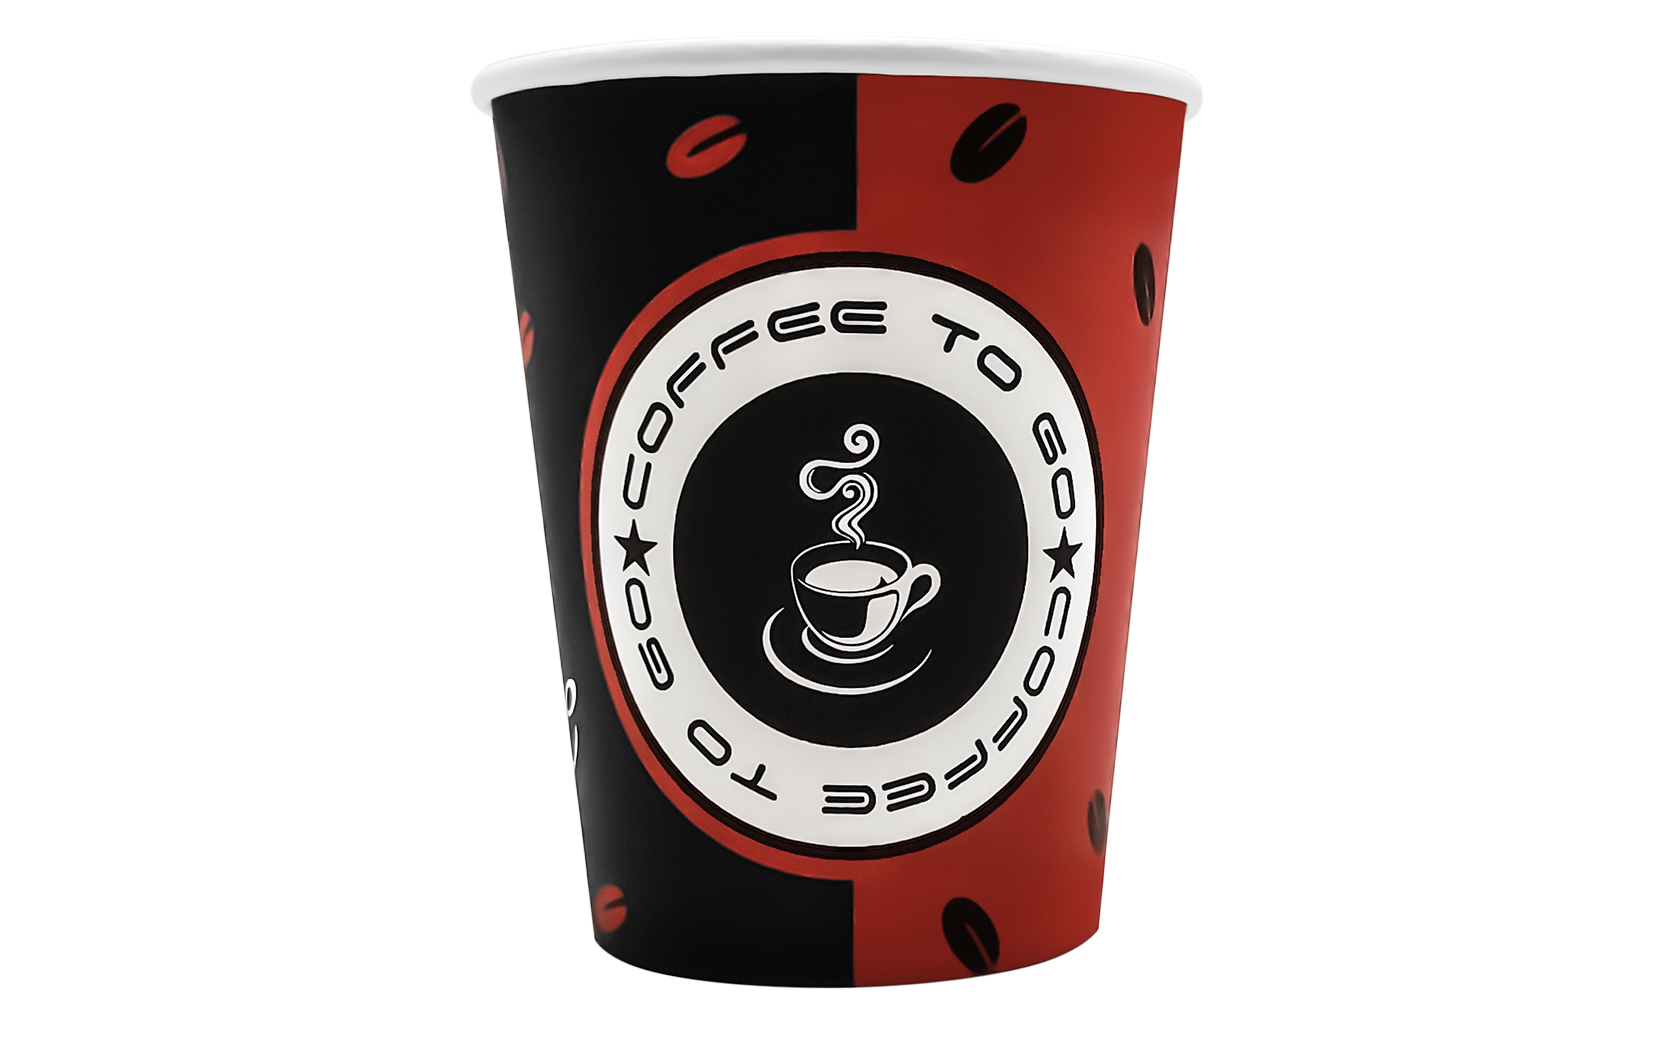 Kaffeebecher 0,2l Hartpapier Pappbecher Coffee to go Kaffee Becher Tee Pappe Cup 